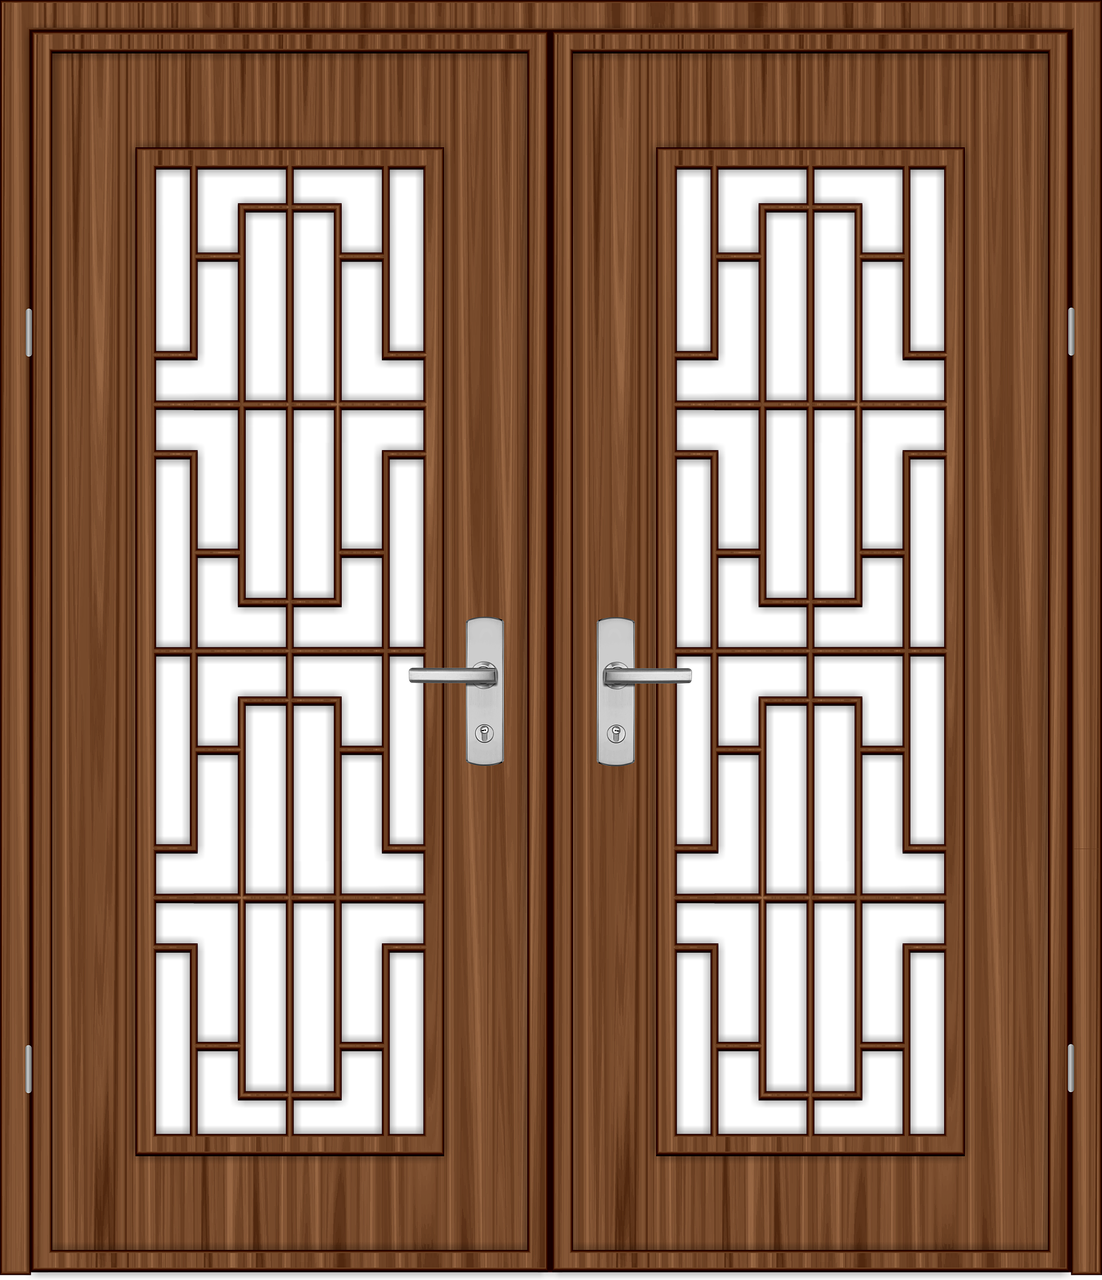 Drzwi wewnętrzne klasyczne. Doskonałe elementy wykończenia wnętrz – drzwi z drewna litego